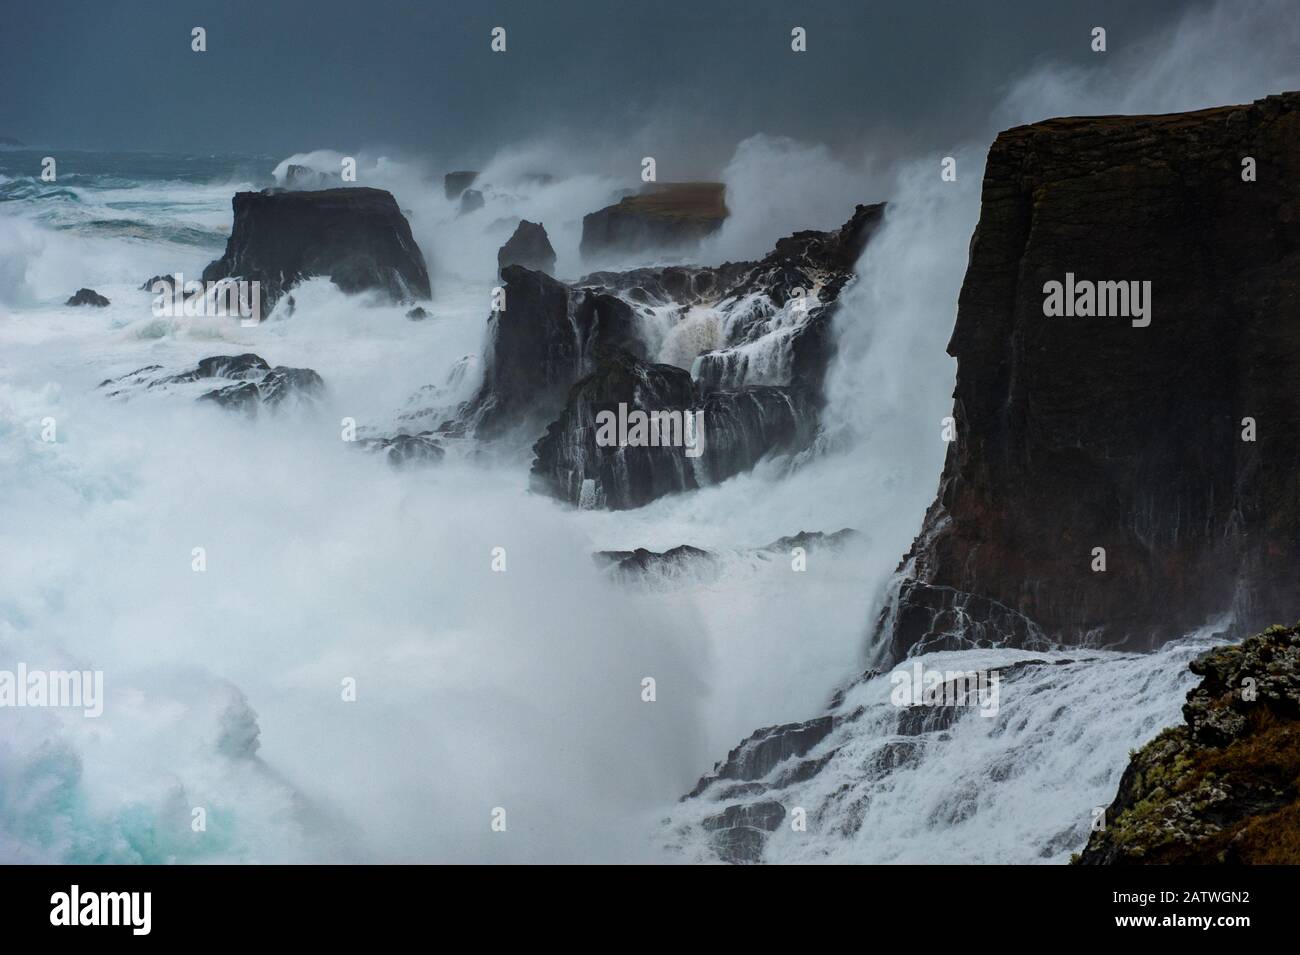 Une grande tempête frappe les falaises, avec des vagues qui se brisent sur le sommet, Shetland, Écosse, Royaume-Uni, juillet. Banque D'Images